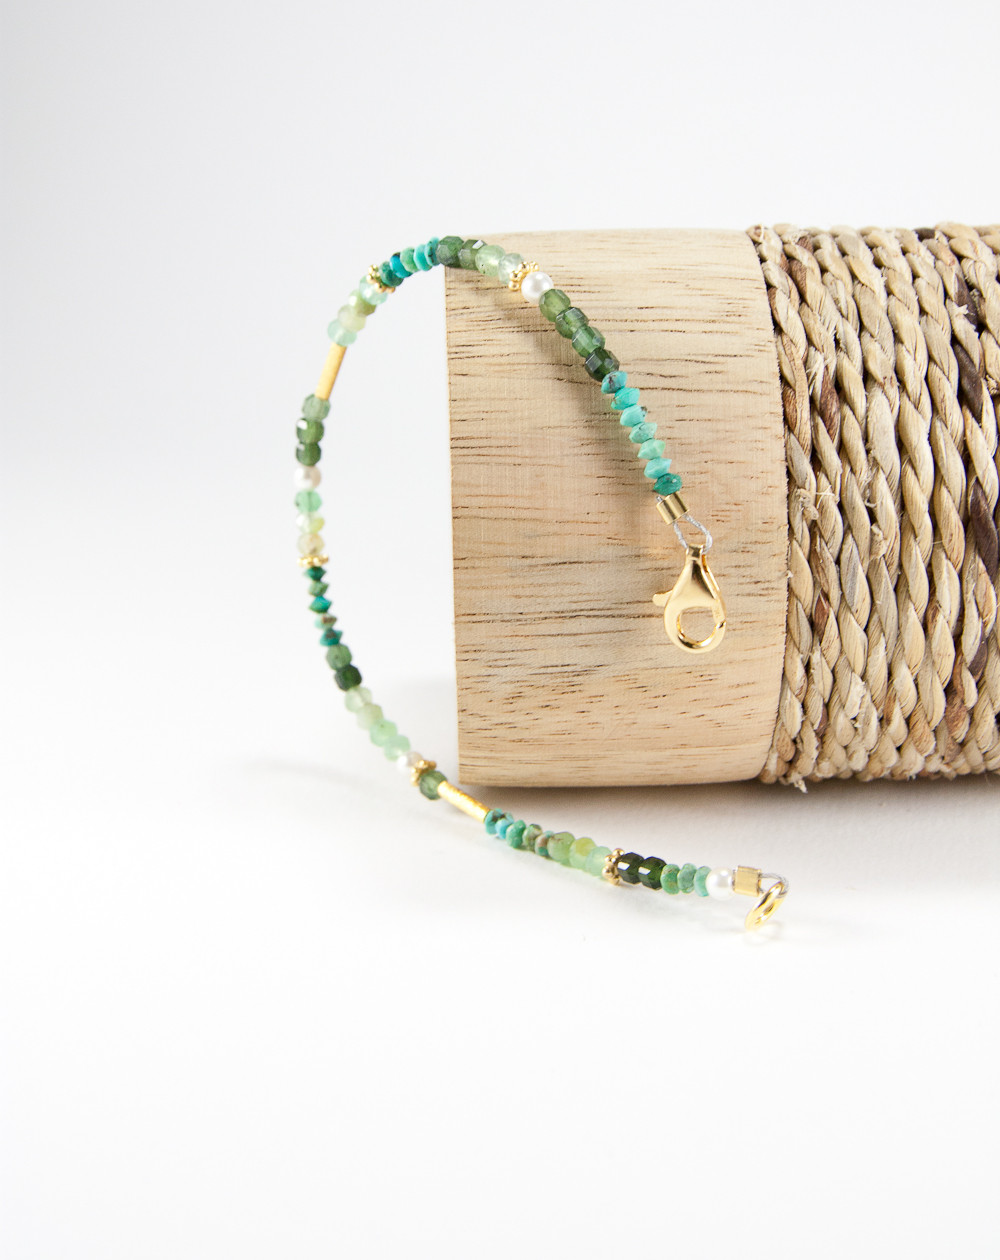 Bracelet épure Jade, Turquoise, Perle d'eau douce, Préhnite, Grenat grossulaire. Sanuk Création, Bayonne